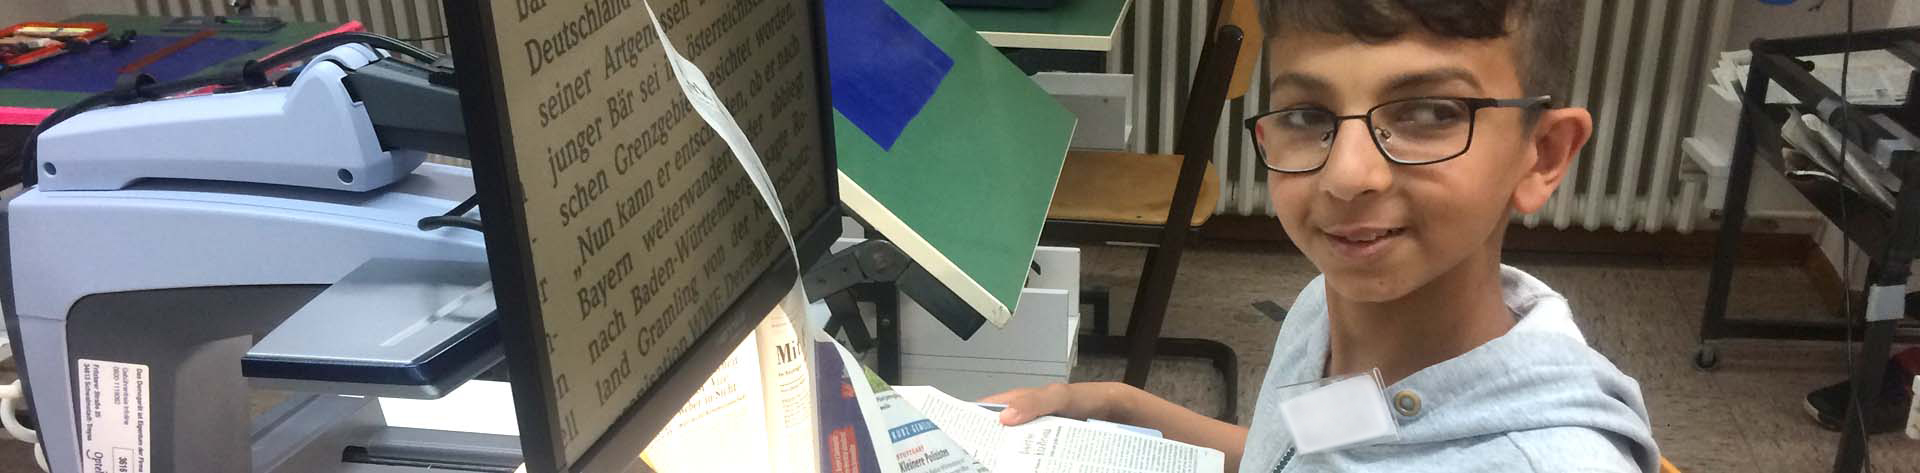 Schüler liest am Lesegerät Zeitung